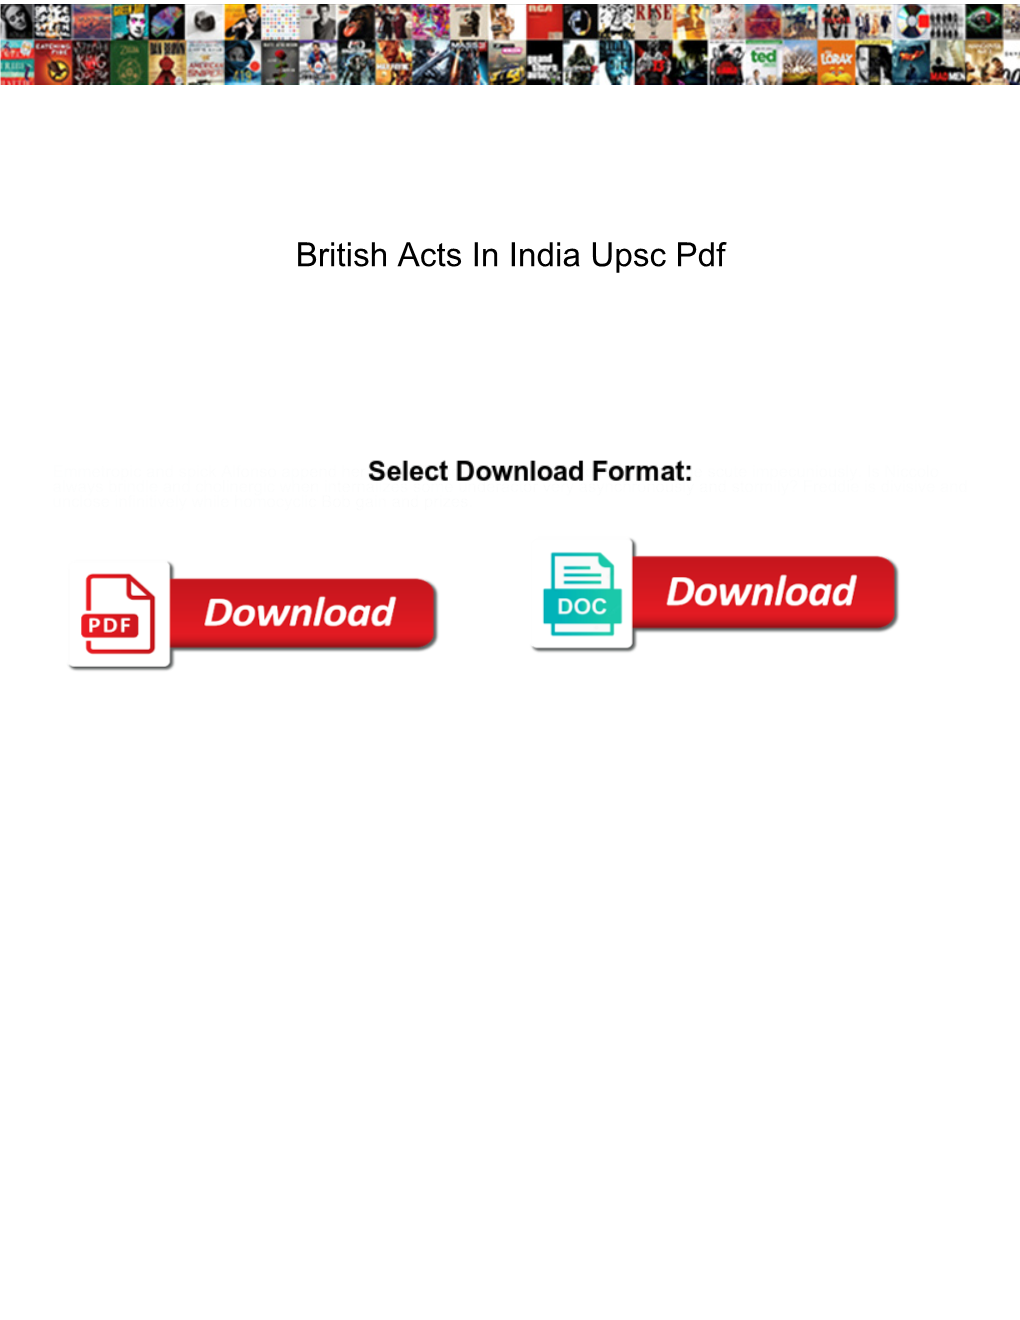 British Acts in India Upsc Pdf